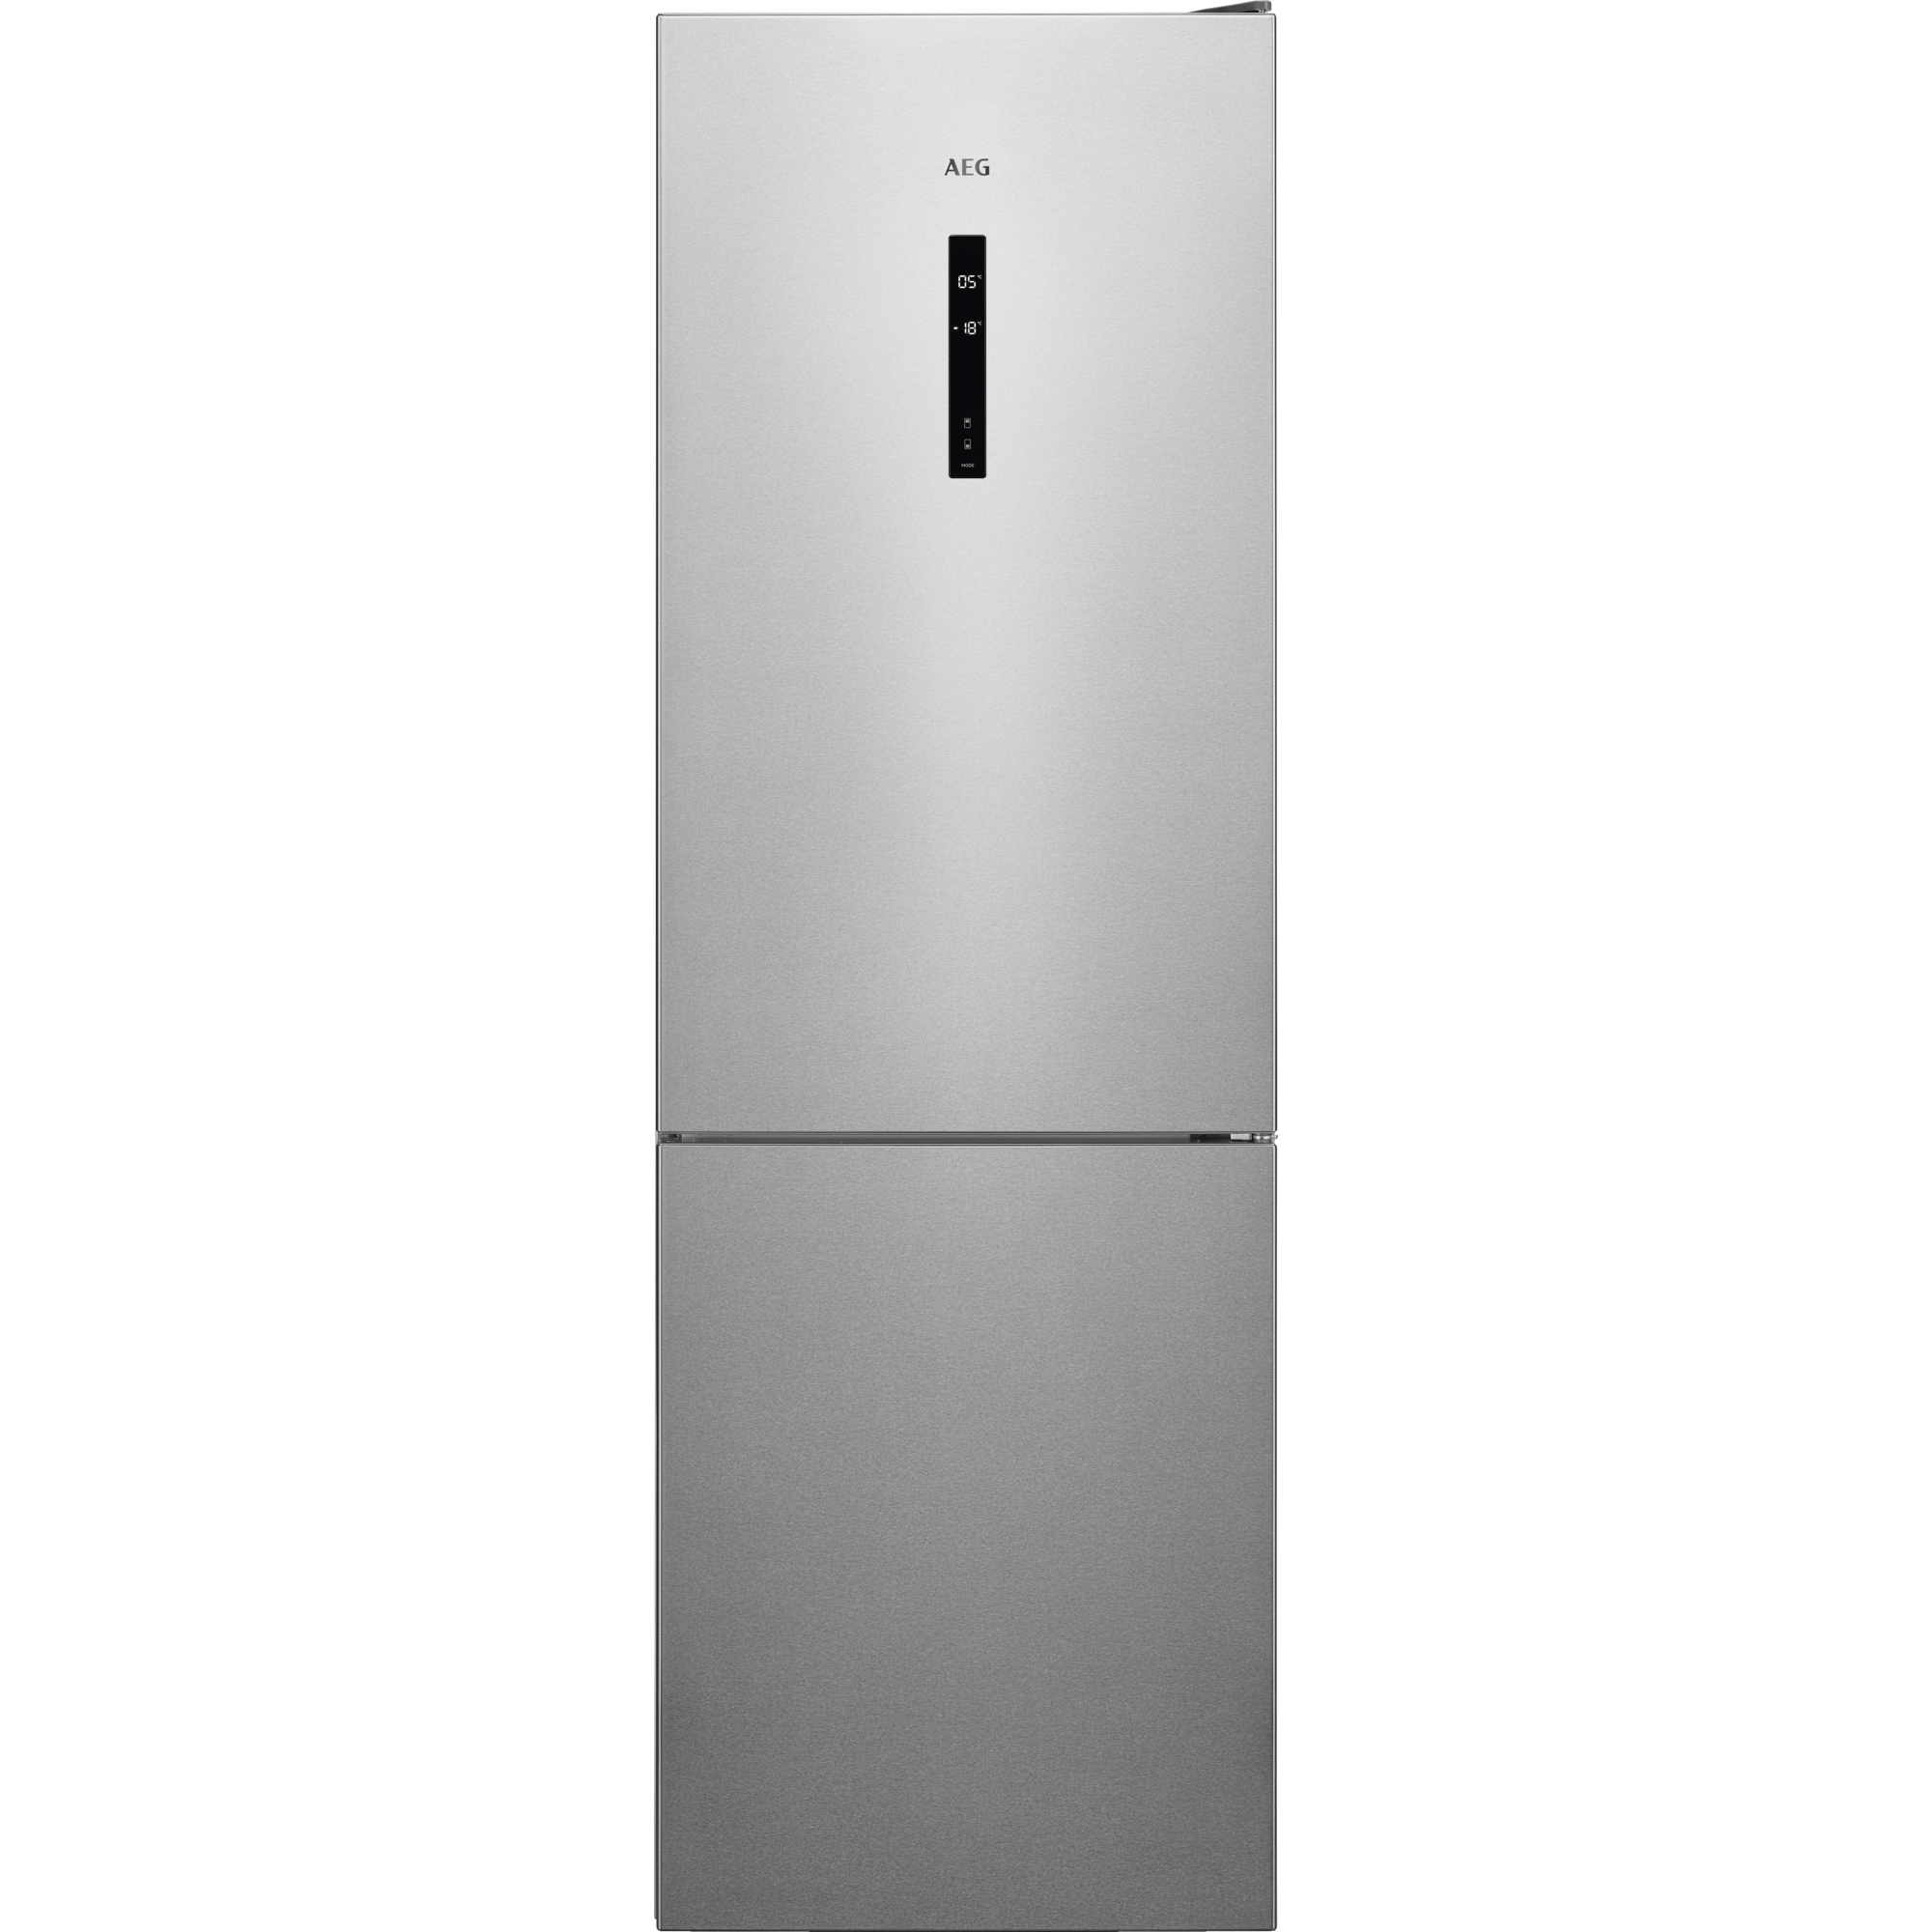 AEG RCB 732 Kühlgefrierkombination cm 186 MX Edelstahl-Türen, 5 kWh, Seiten hoch, E 250 grau) (E